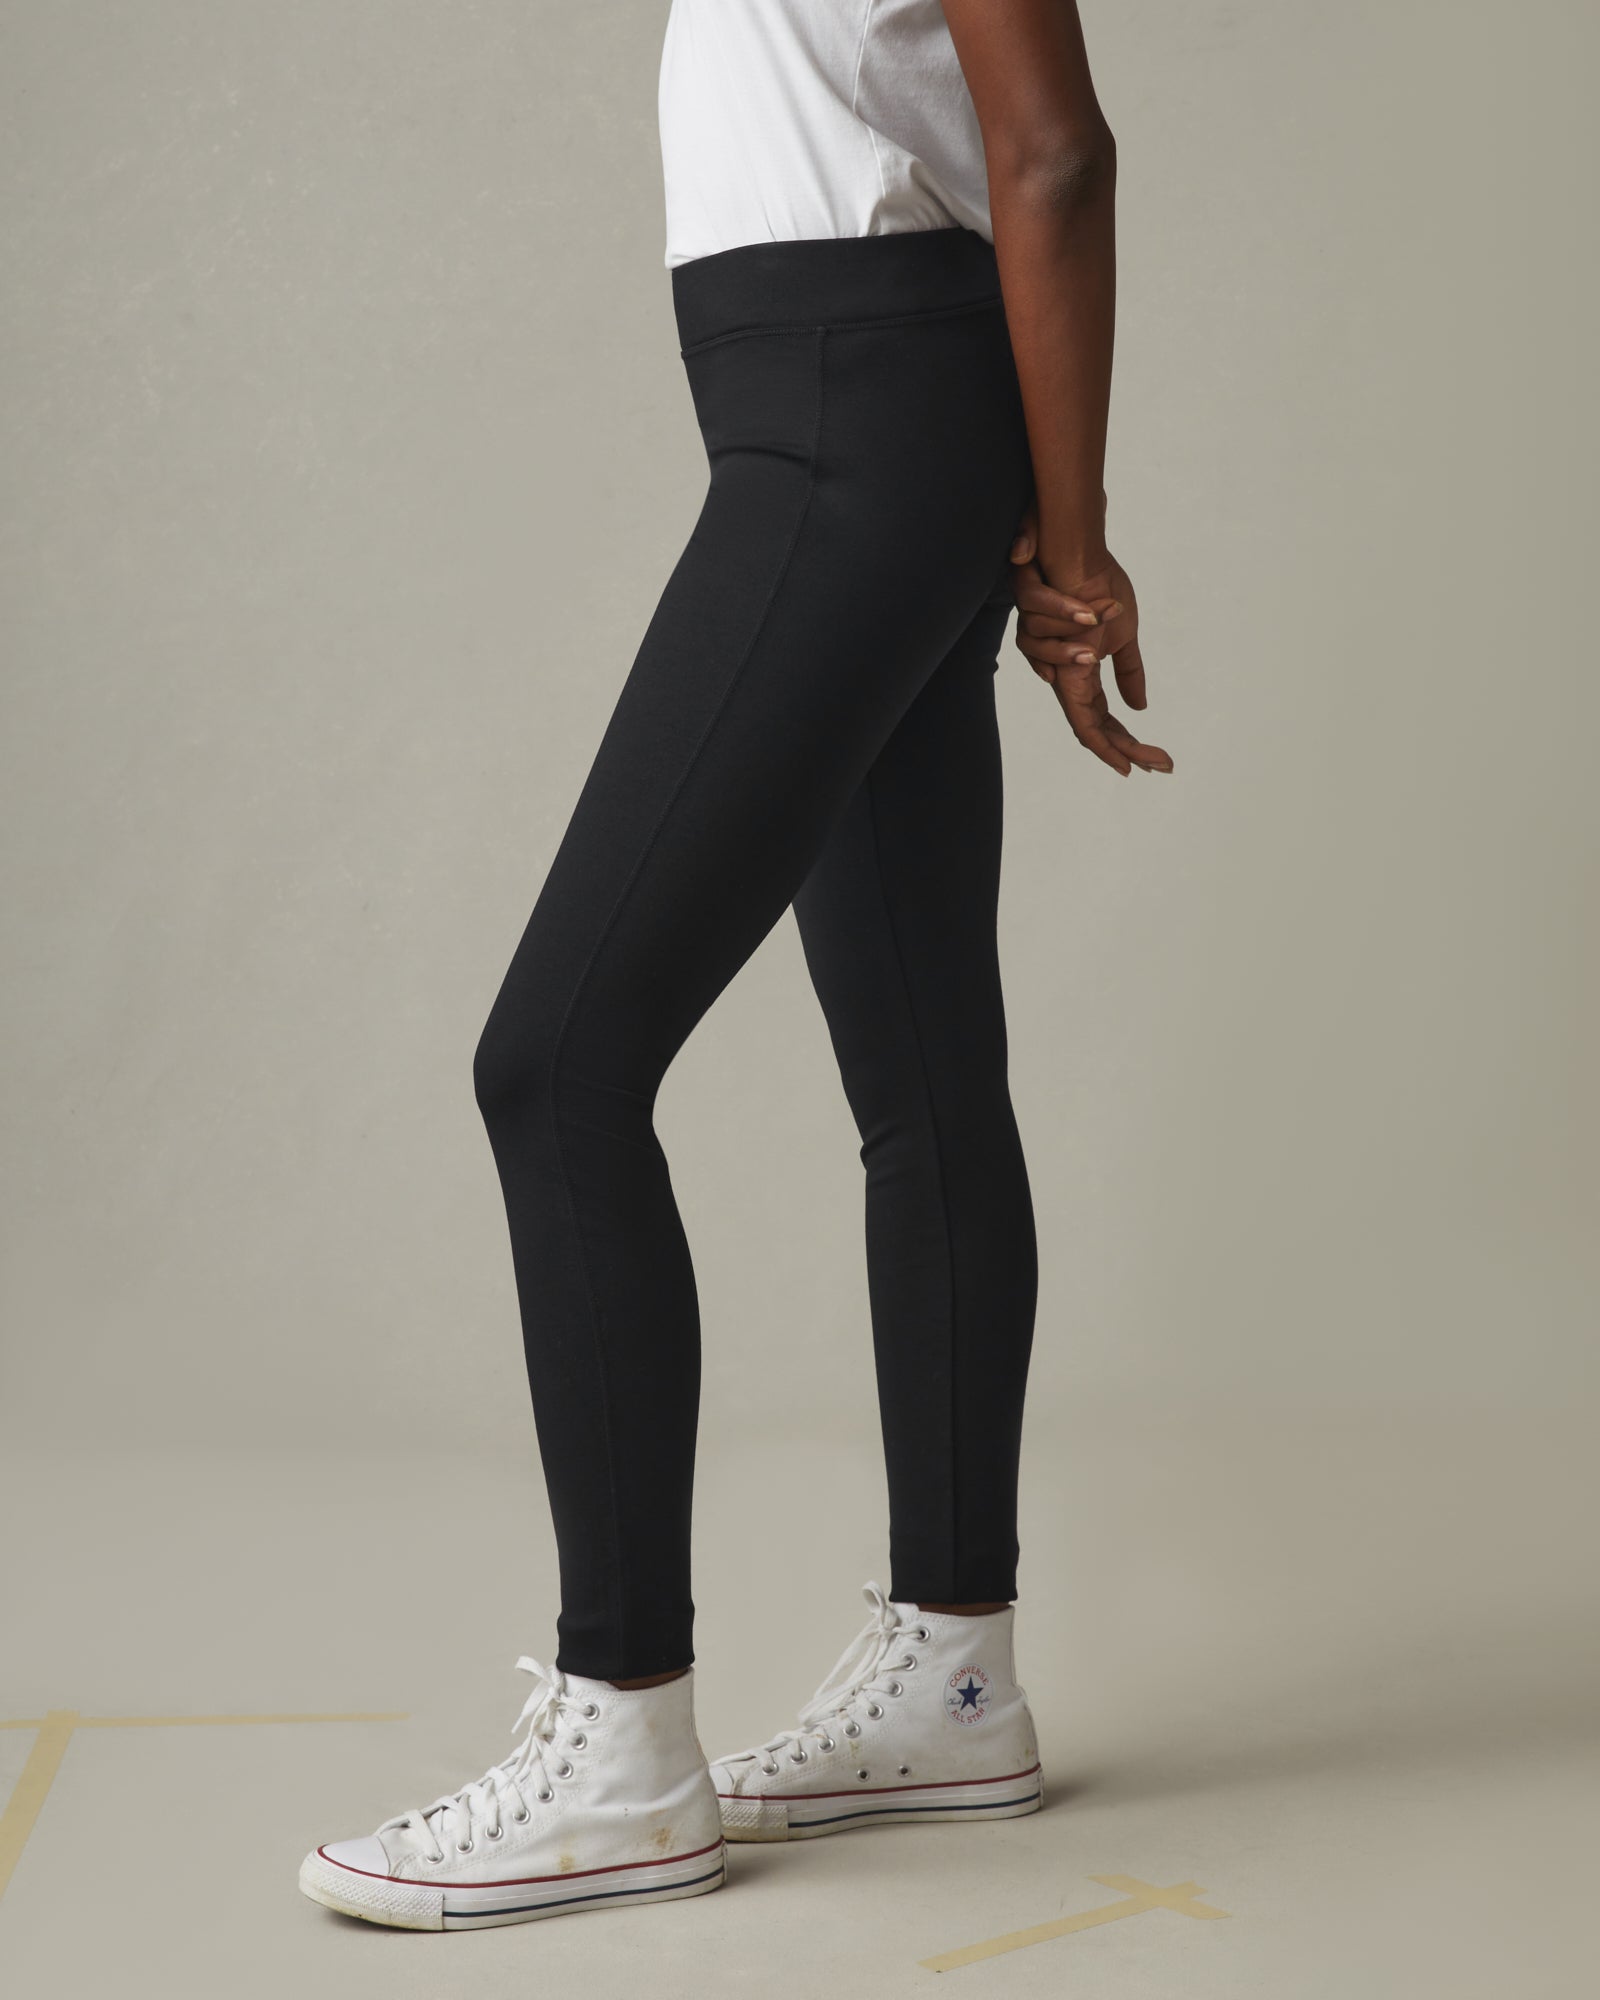 Nike Capri Windbreaker Pants Black Double Zipper Front Wide Leg Women's S